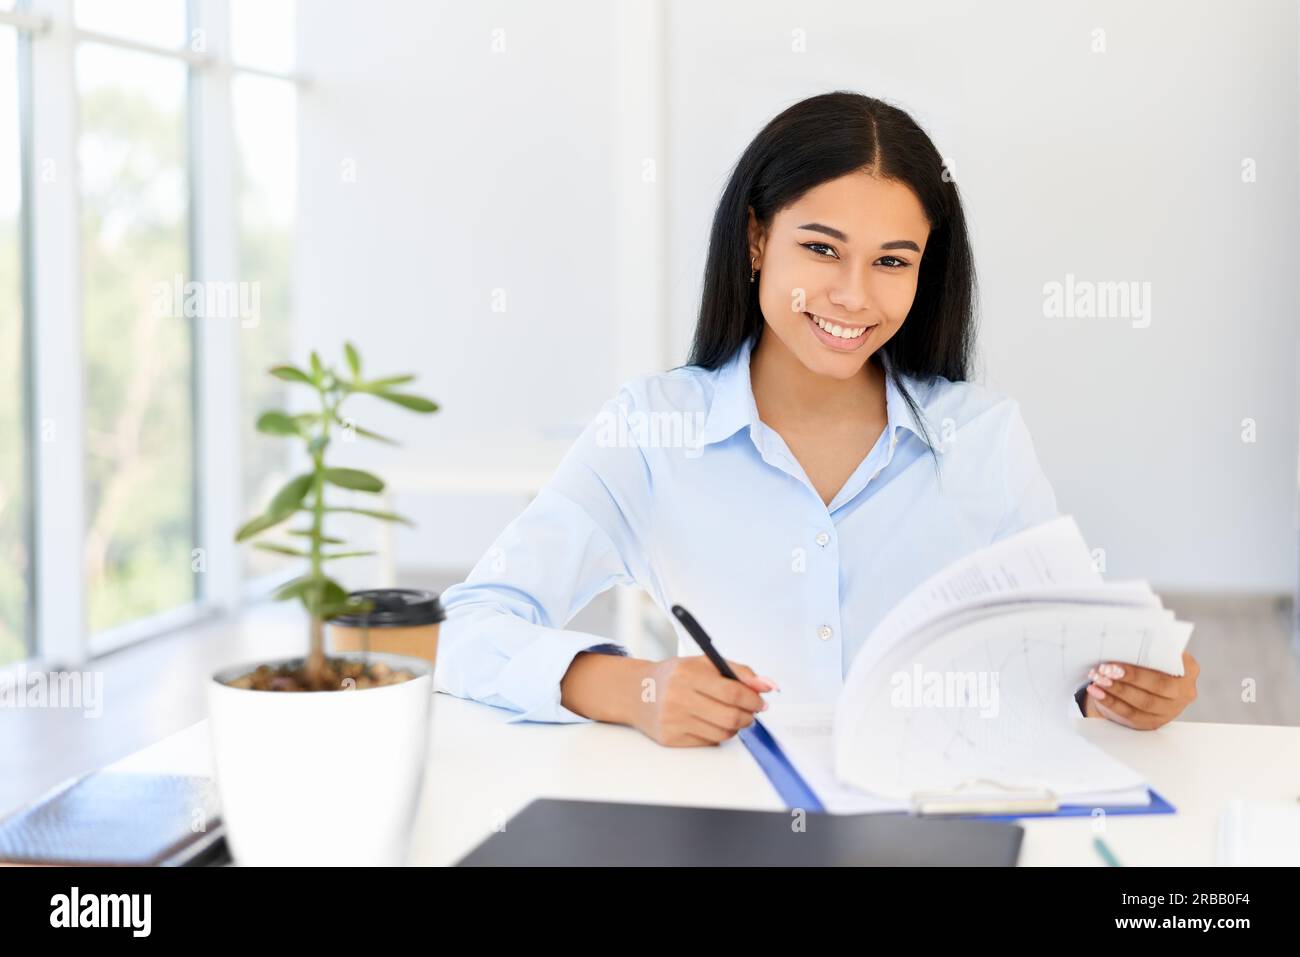 Lächelnde junge afroamerikanische Geschäftsfrau, die in einem hellen, modernen Büro auf ihrem Schreibtisch arbeitet. Frau im Geschäft, Erfolgskonzept Stockfoto